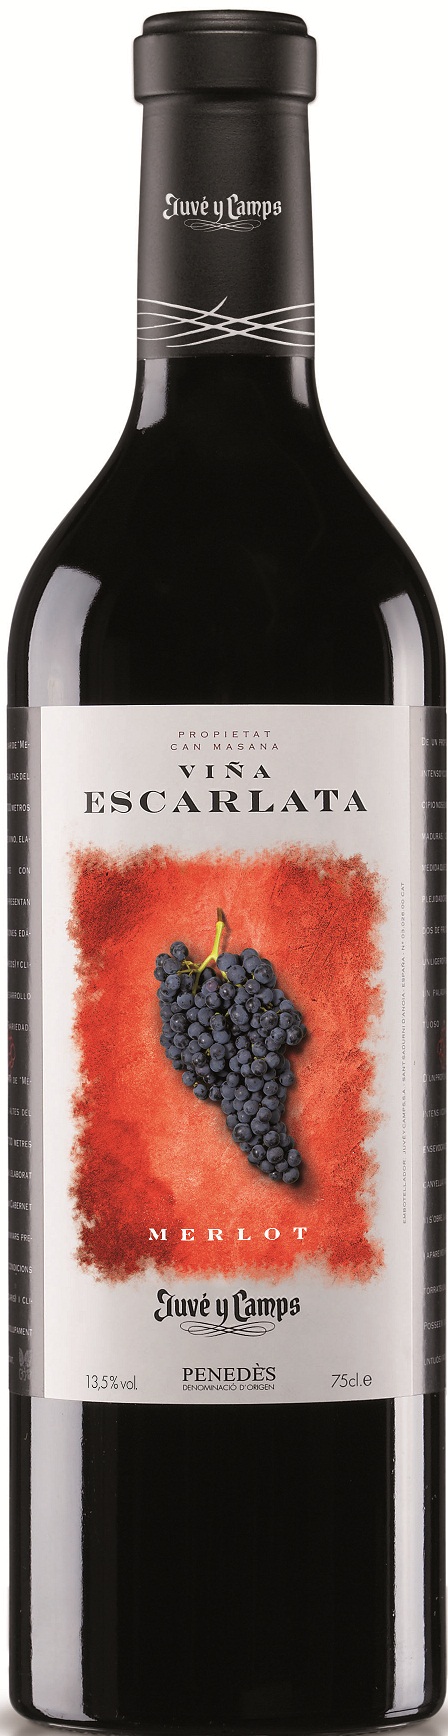 Imagen de la botella de Vino Viña Escarlata